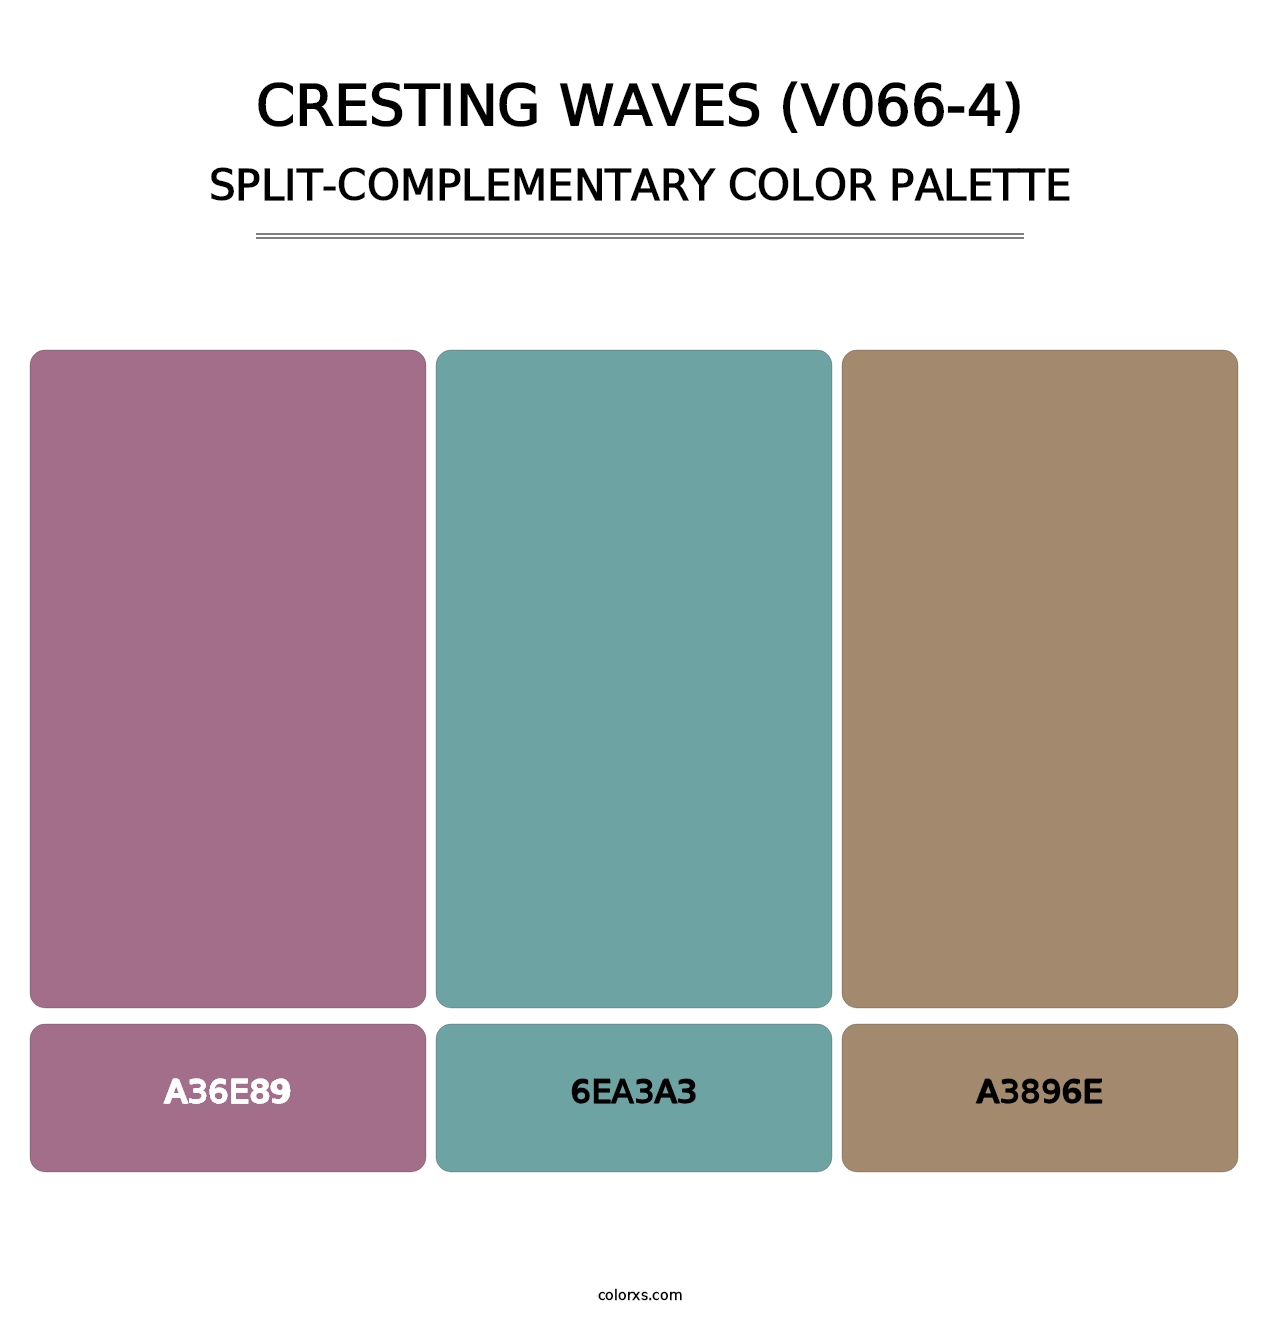 Cresting Waves (V066-4) - Split-Complementary Color Palette